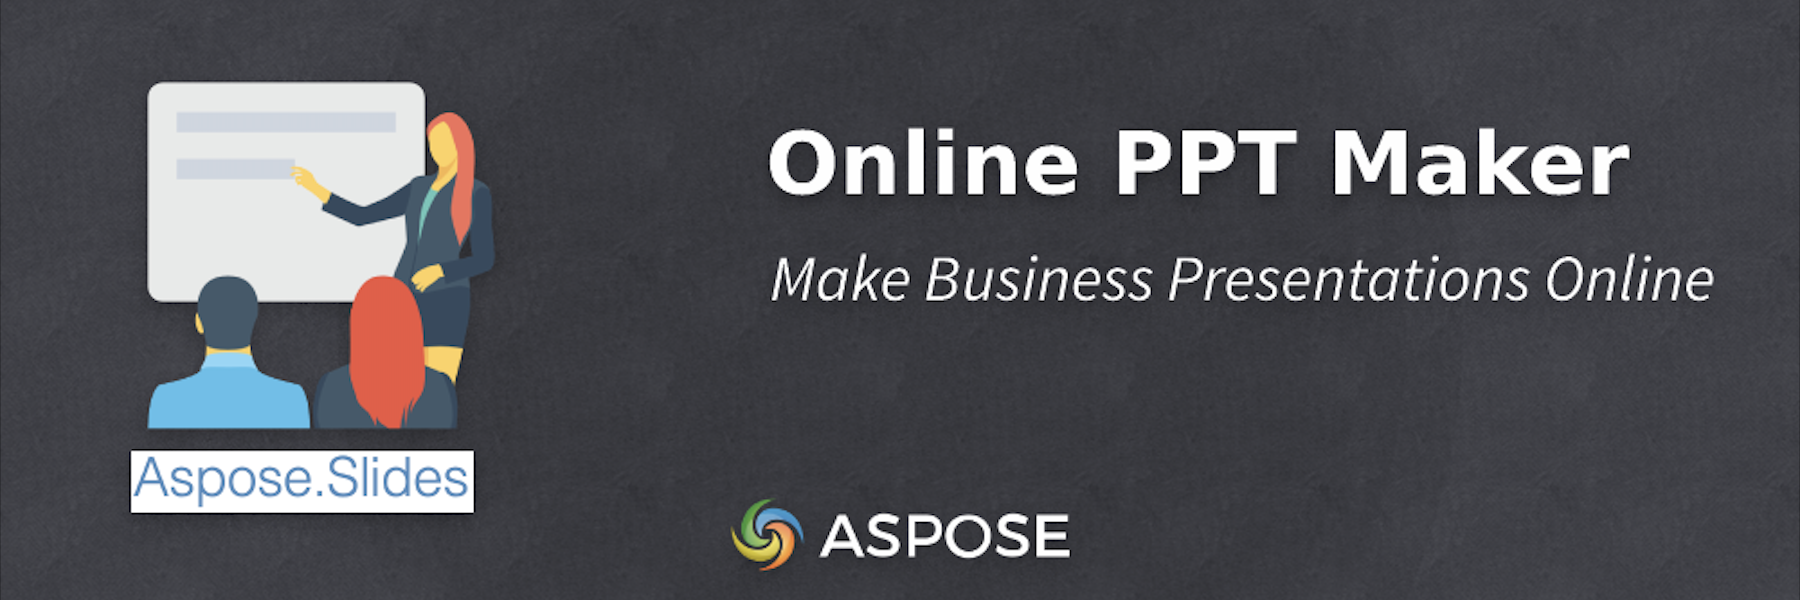 Online PPT Maker - Gör affärspresentationer online